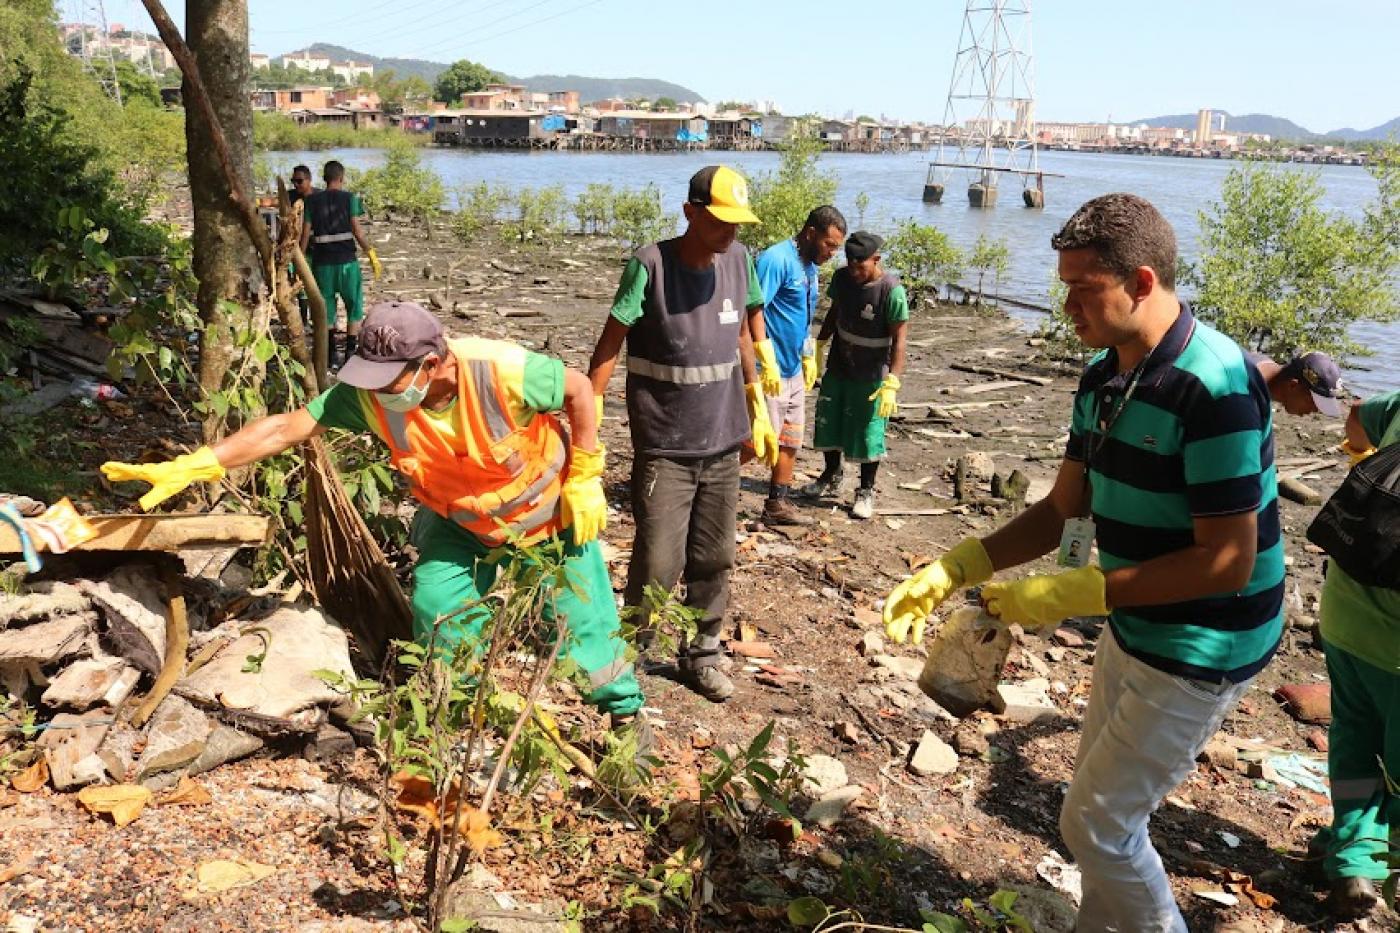 homens estão recolhendo detritos em área de mangue. Todos usam luvas. #paratodosverem 